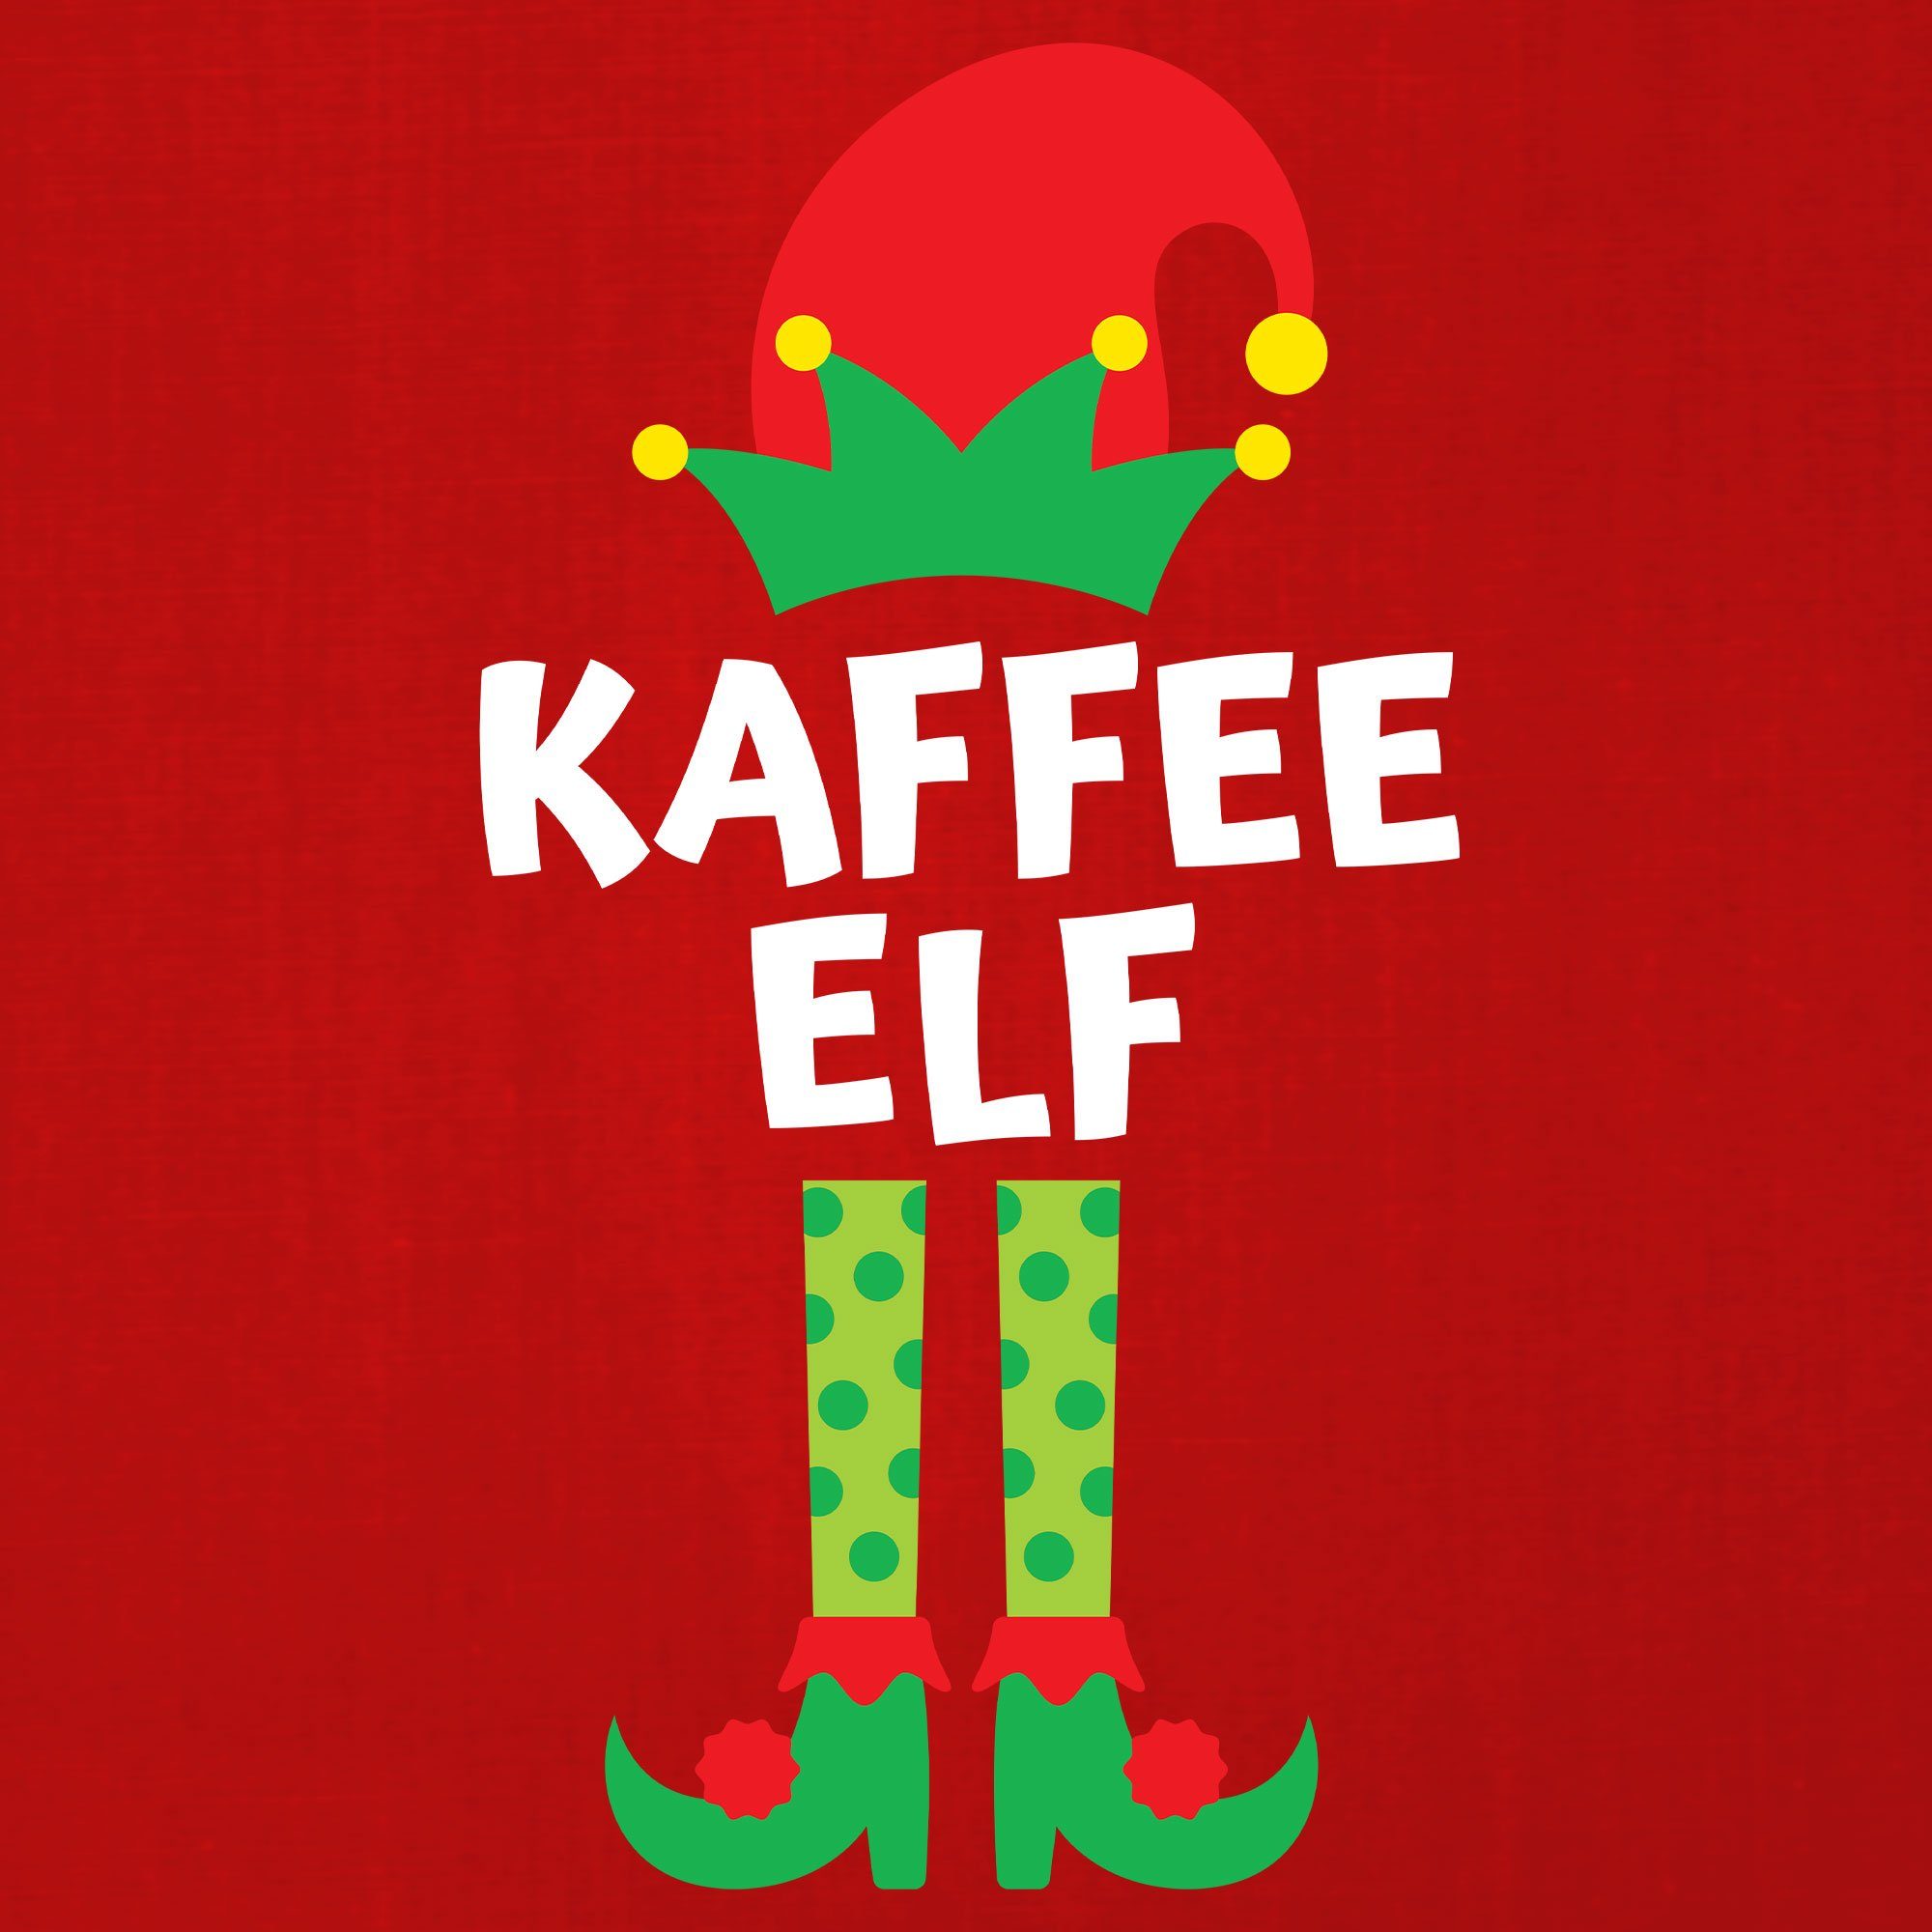 Quattro Formatee Kurzarmshirt (1-tlg) - Herren Elf Kaffee T-Shirt Weihnachten Christmas Rot X-mas